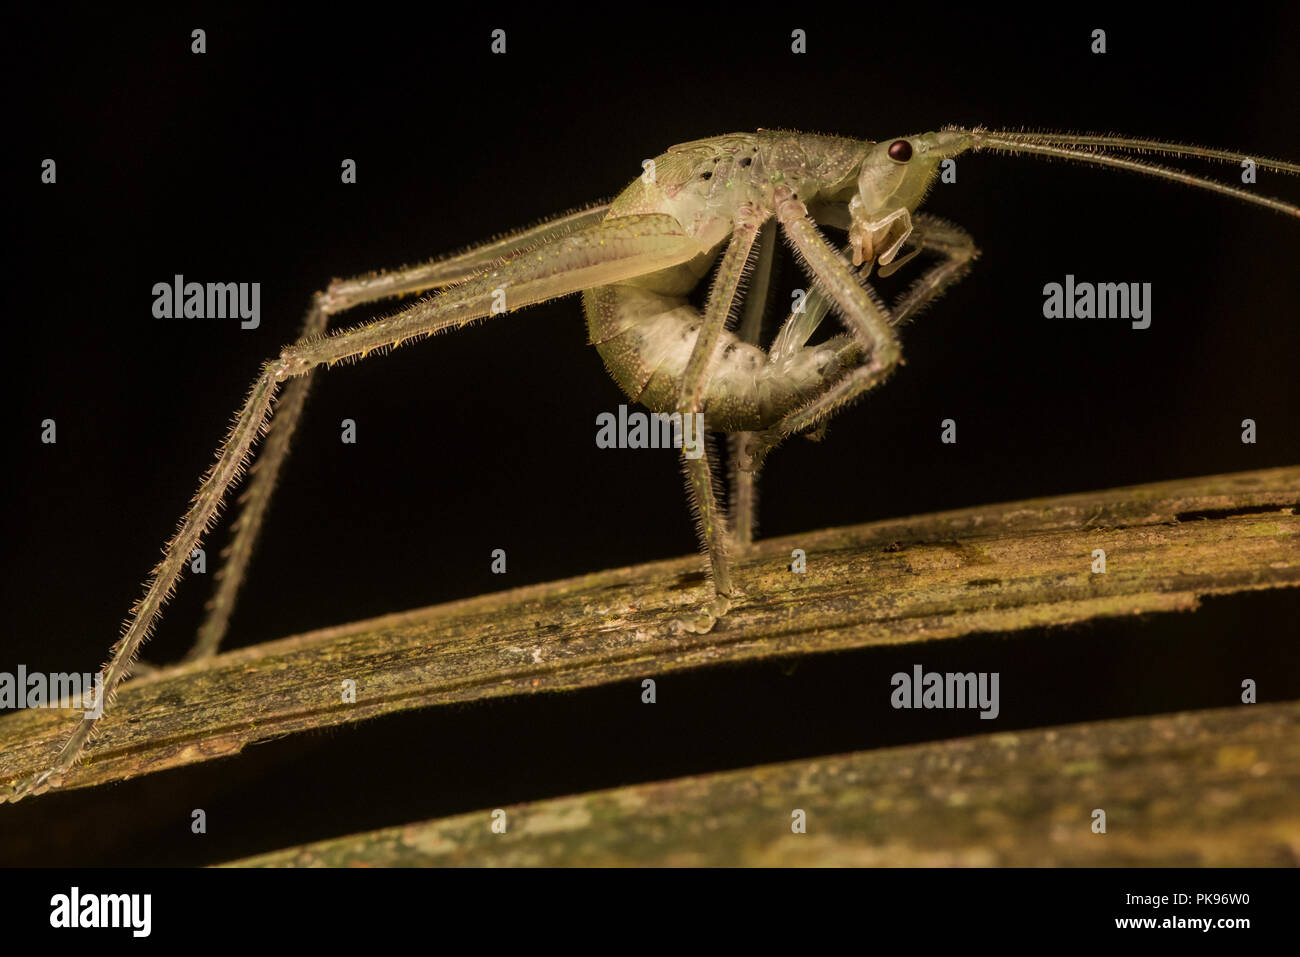 Un katydid onagre dans une pose inhabituelle dans la jungle sud-américaine. Banque D'Images